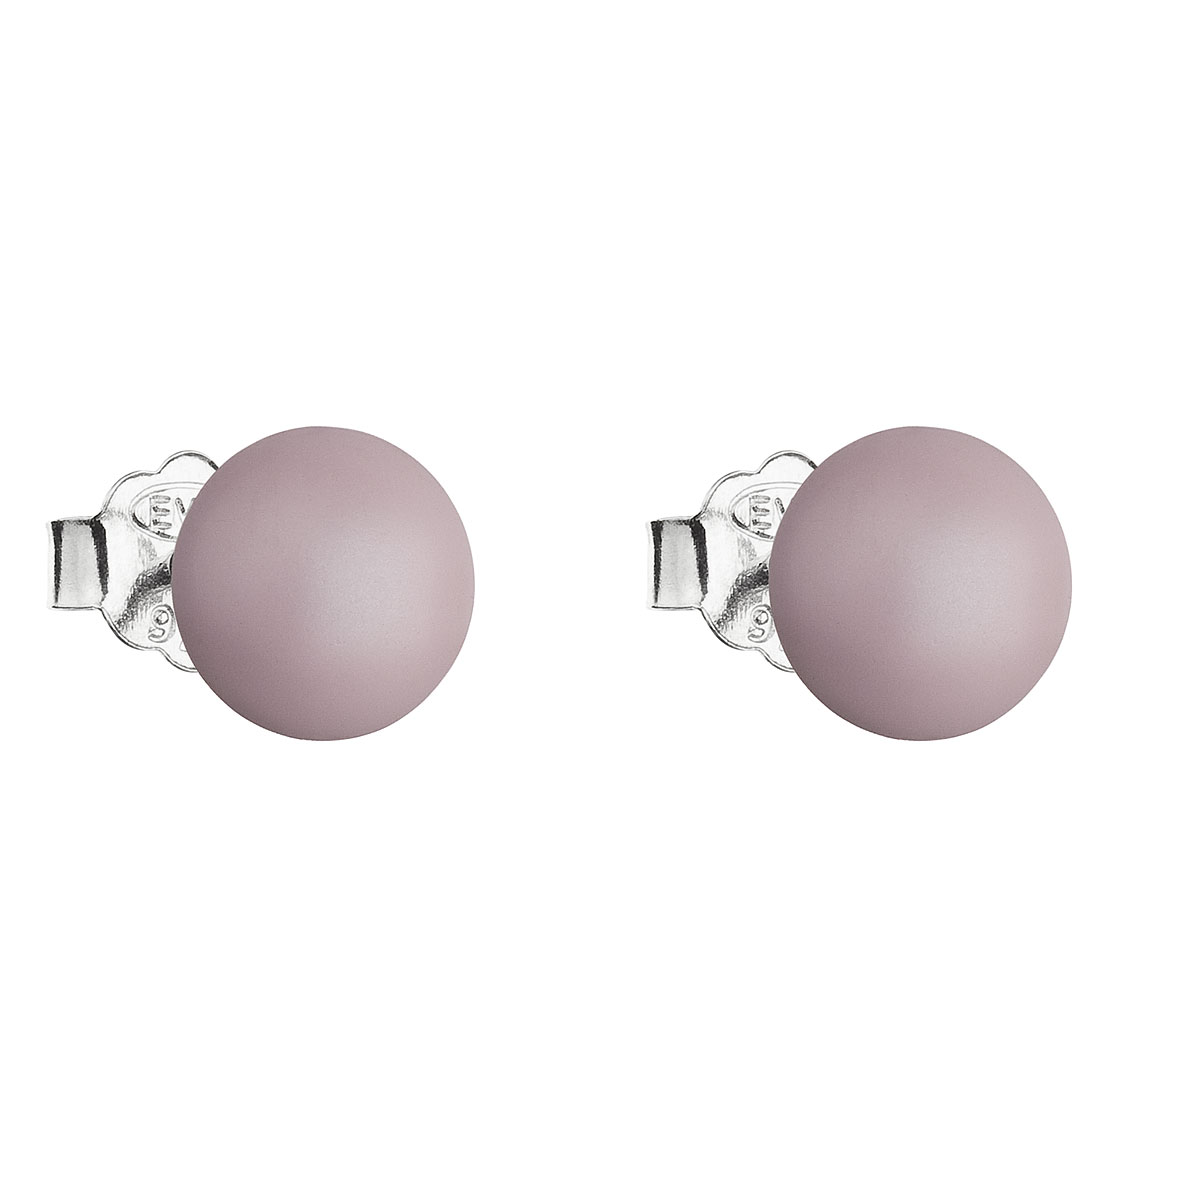 Evolution Group Stříbrné náušnice pecka s perlou Swarovski růžové kulaté 31142.3 pastel rose